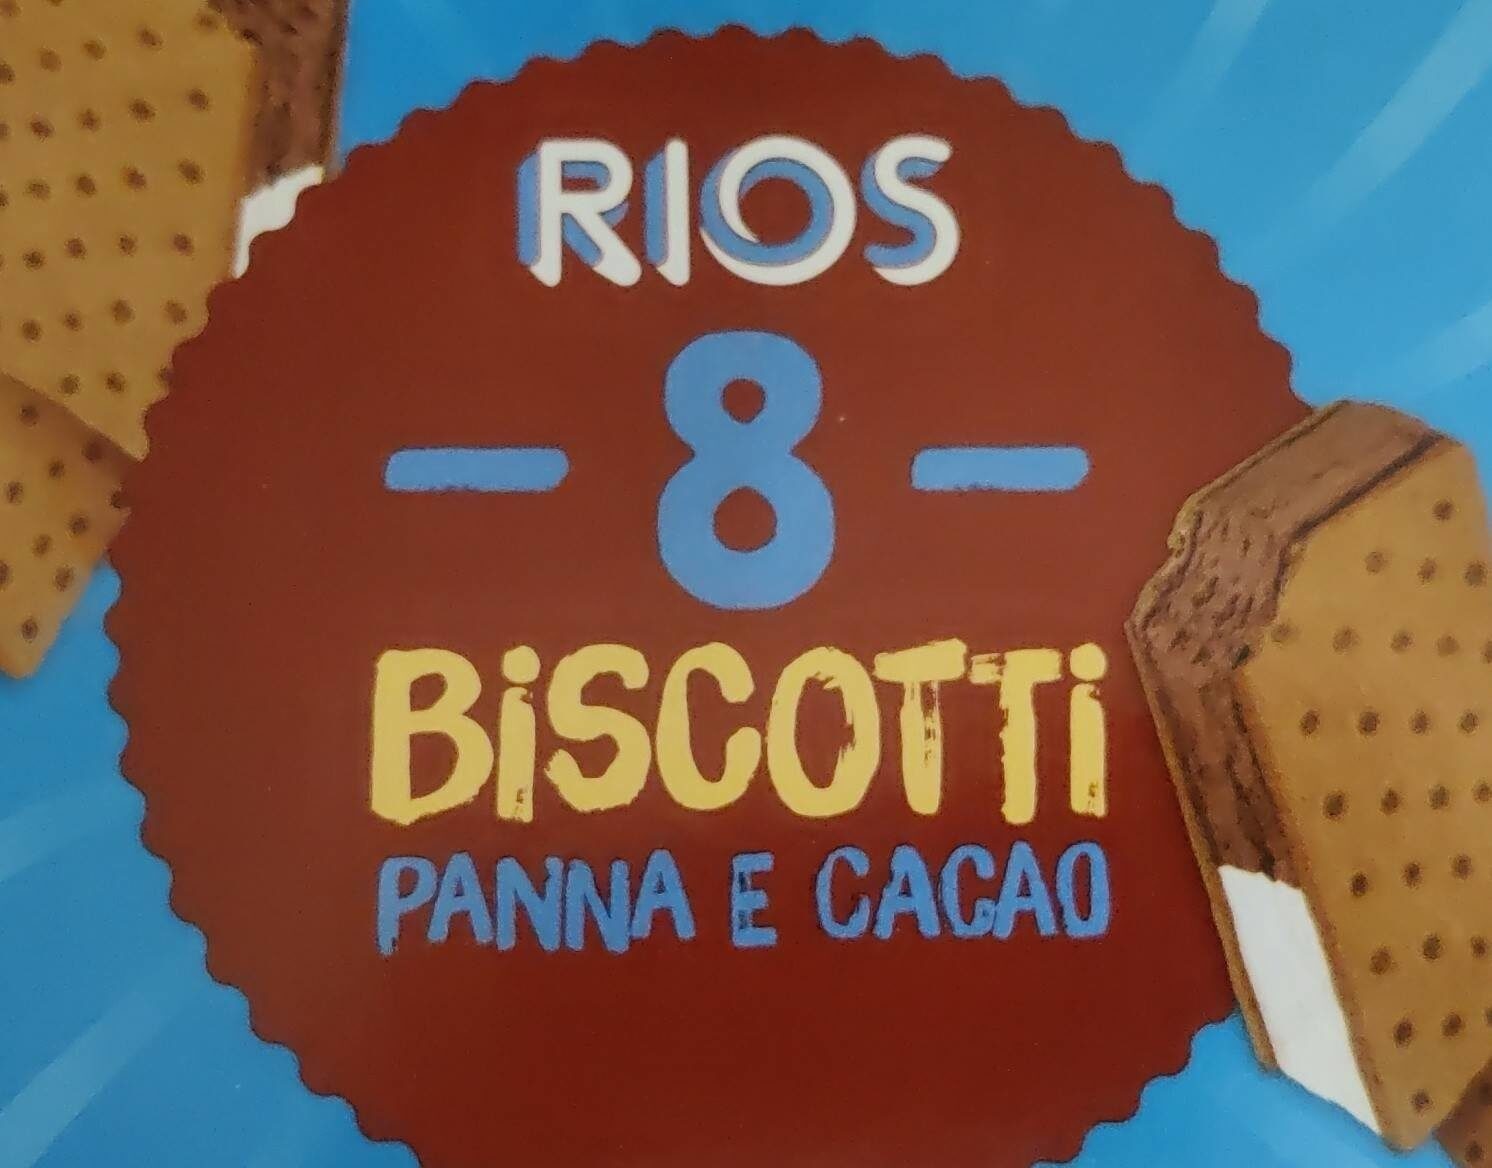 Biscotti panna e cacao - Prodotto - it